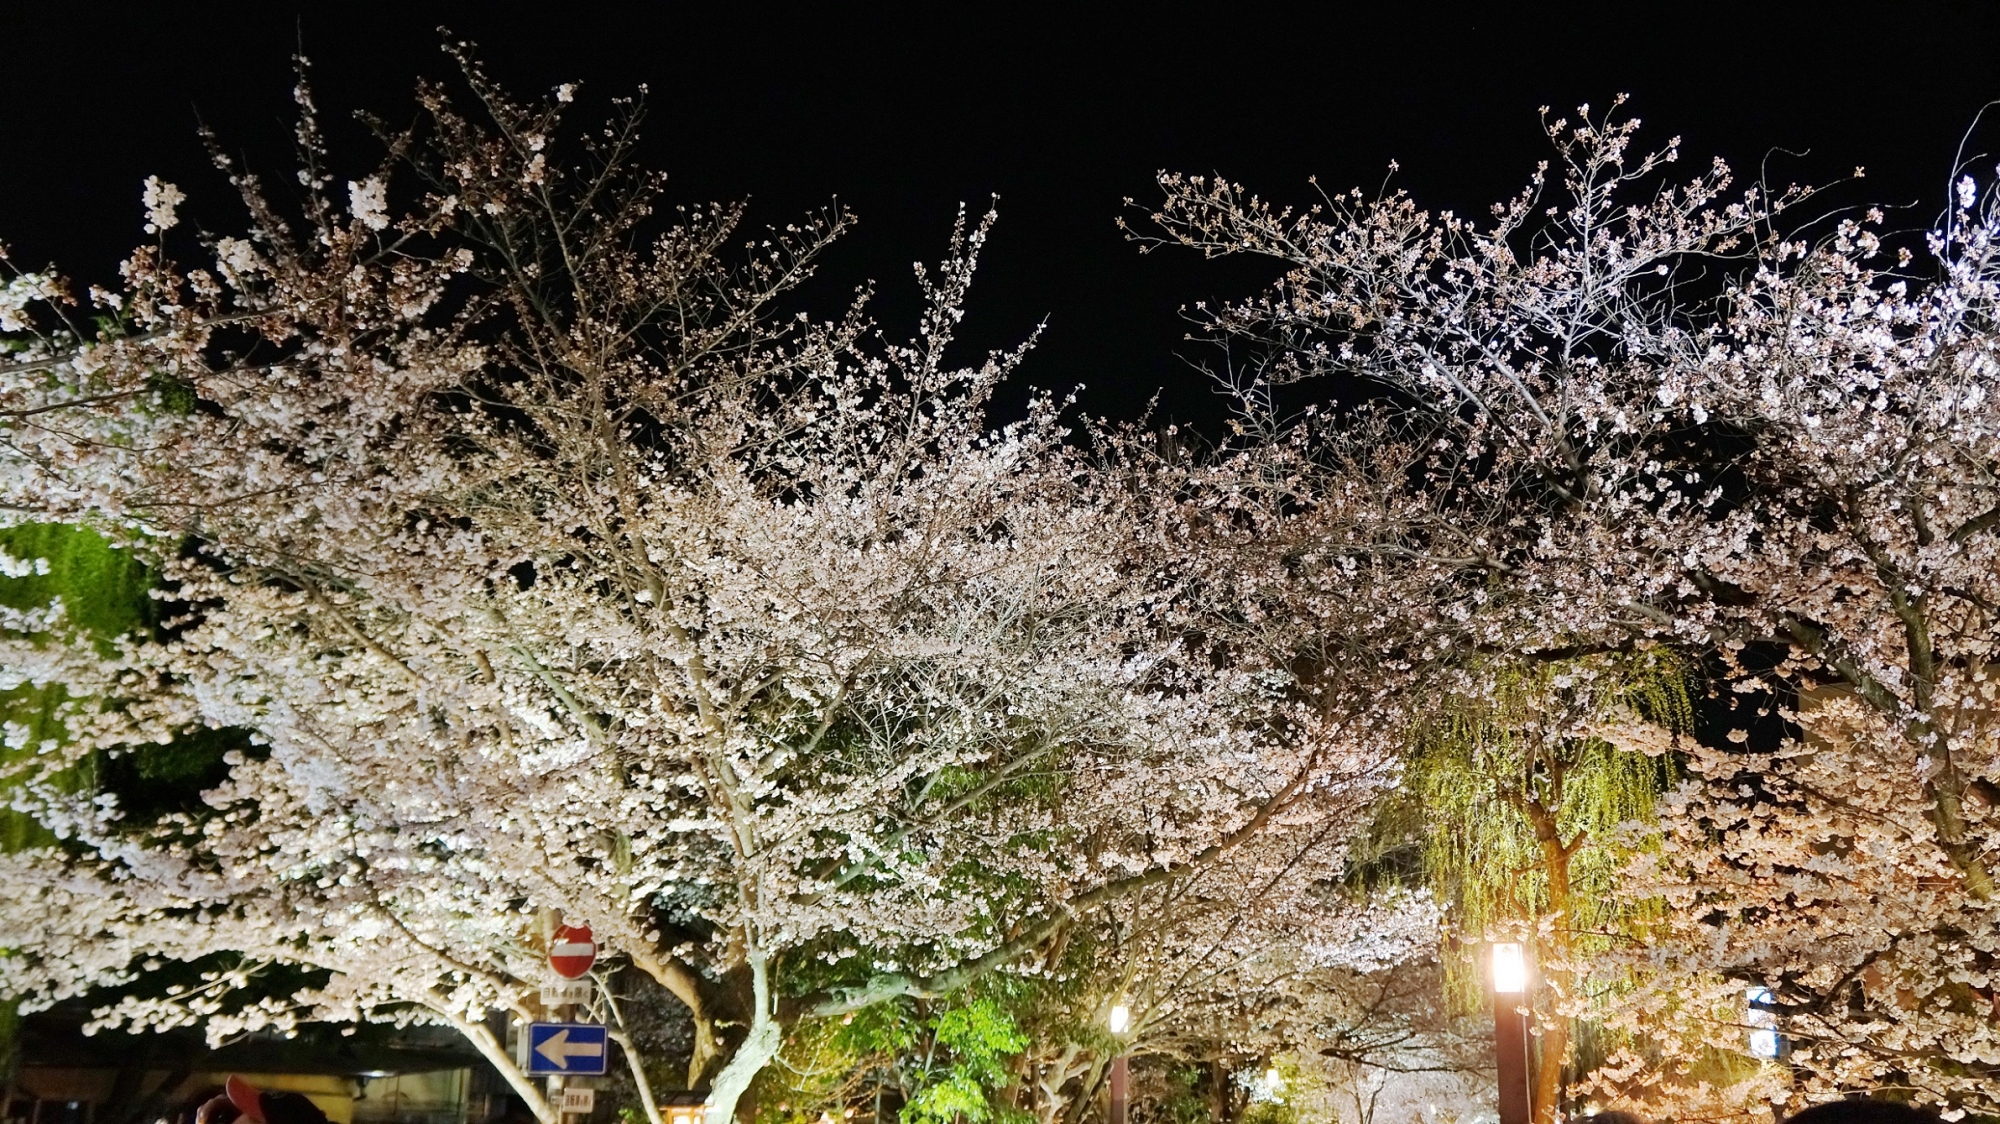 祇園白川の満開の夜桜と柳